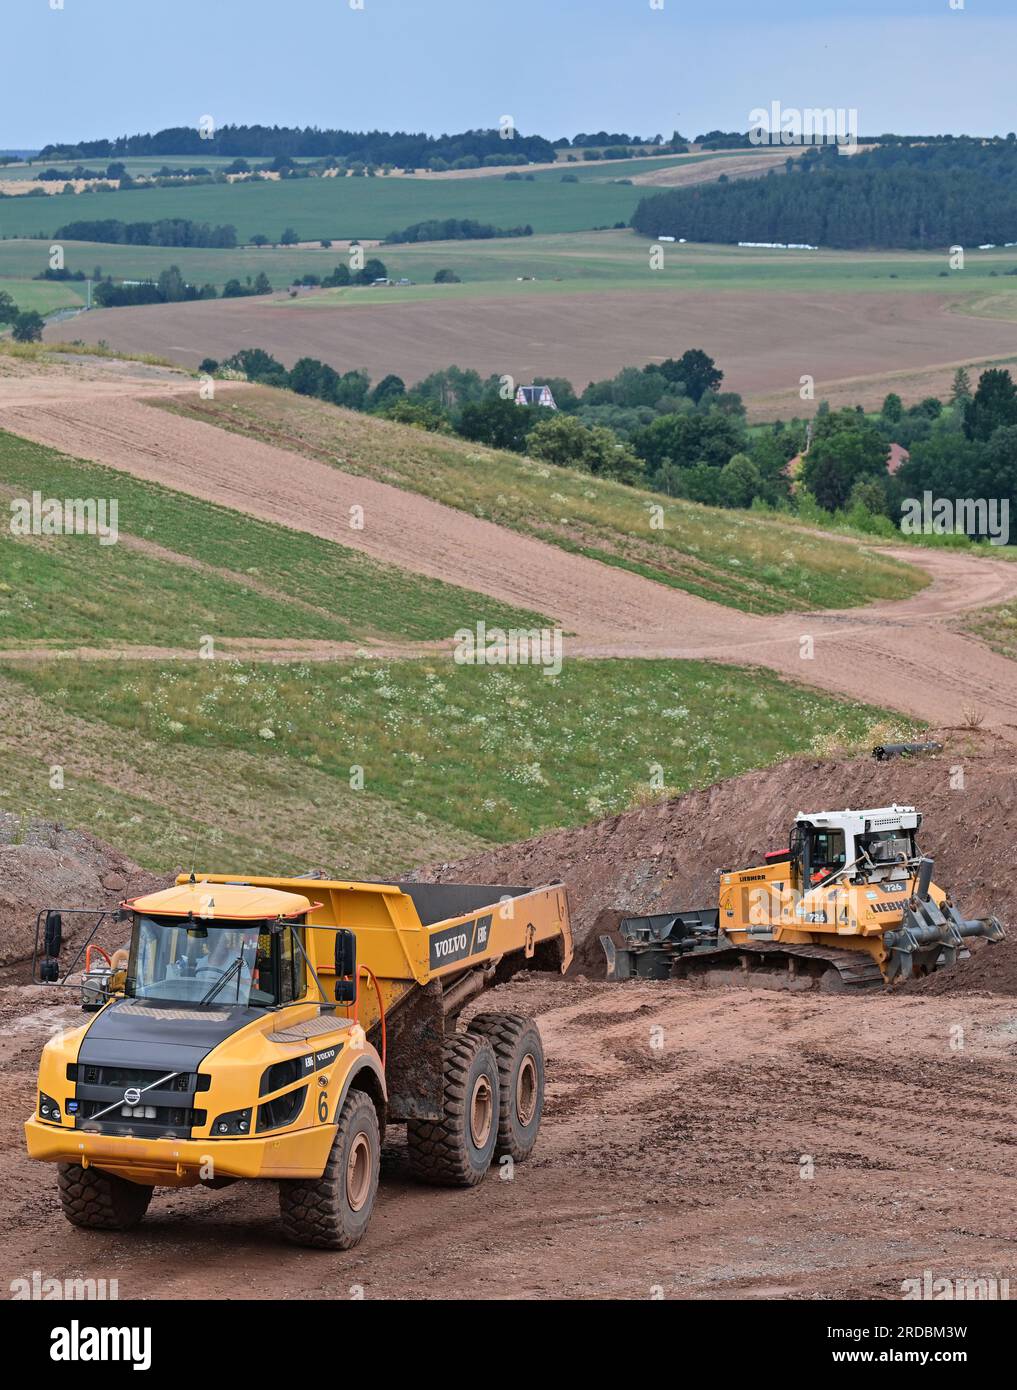 20. Juli 2023, Thüringen, Zwirtzschen: Am größten Wismut-Standort in Thüringen werden schwere Maschinen eingesetzt, um das Erbe des Uranerzbergbaus zu säubern. In der Bergeanlage Culmitzsch wurden Rückstände aus der Uranerzverarbeitung gesammelt. Insgesamt befanden sich vier dieser Anlagen auf einer Fläche von rund 570 Hektar in Westsachsen und Ostthüringen. Die Sanierung des Kraftwerks Culmitzsch, das sich auf etwa 250 Hektar erstreckt, wird voraussichtlich bis 2028 dauern und ist die zeitaufwändigste Sanierung von Wismut. Bis 2022 wird die Sanierung kontaminierter Standorte aus dem Uranabbau insgesamt etwa 7 Mrd. eur kosten Stockfoto